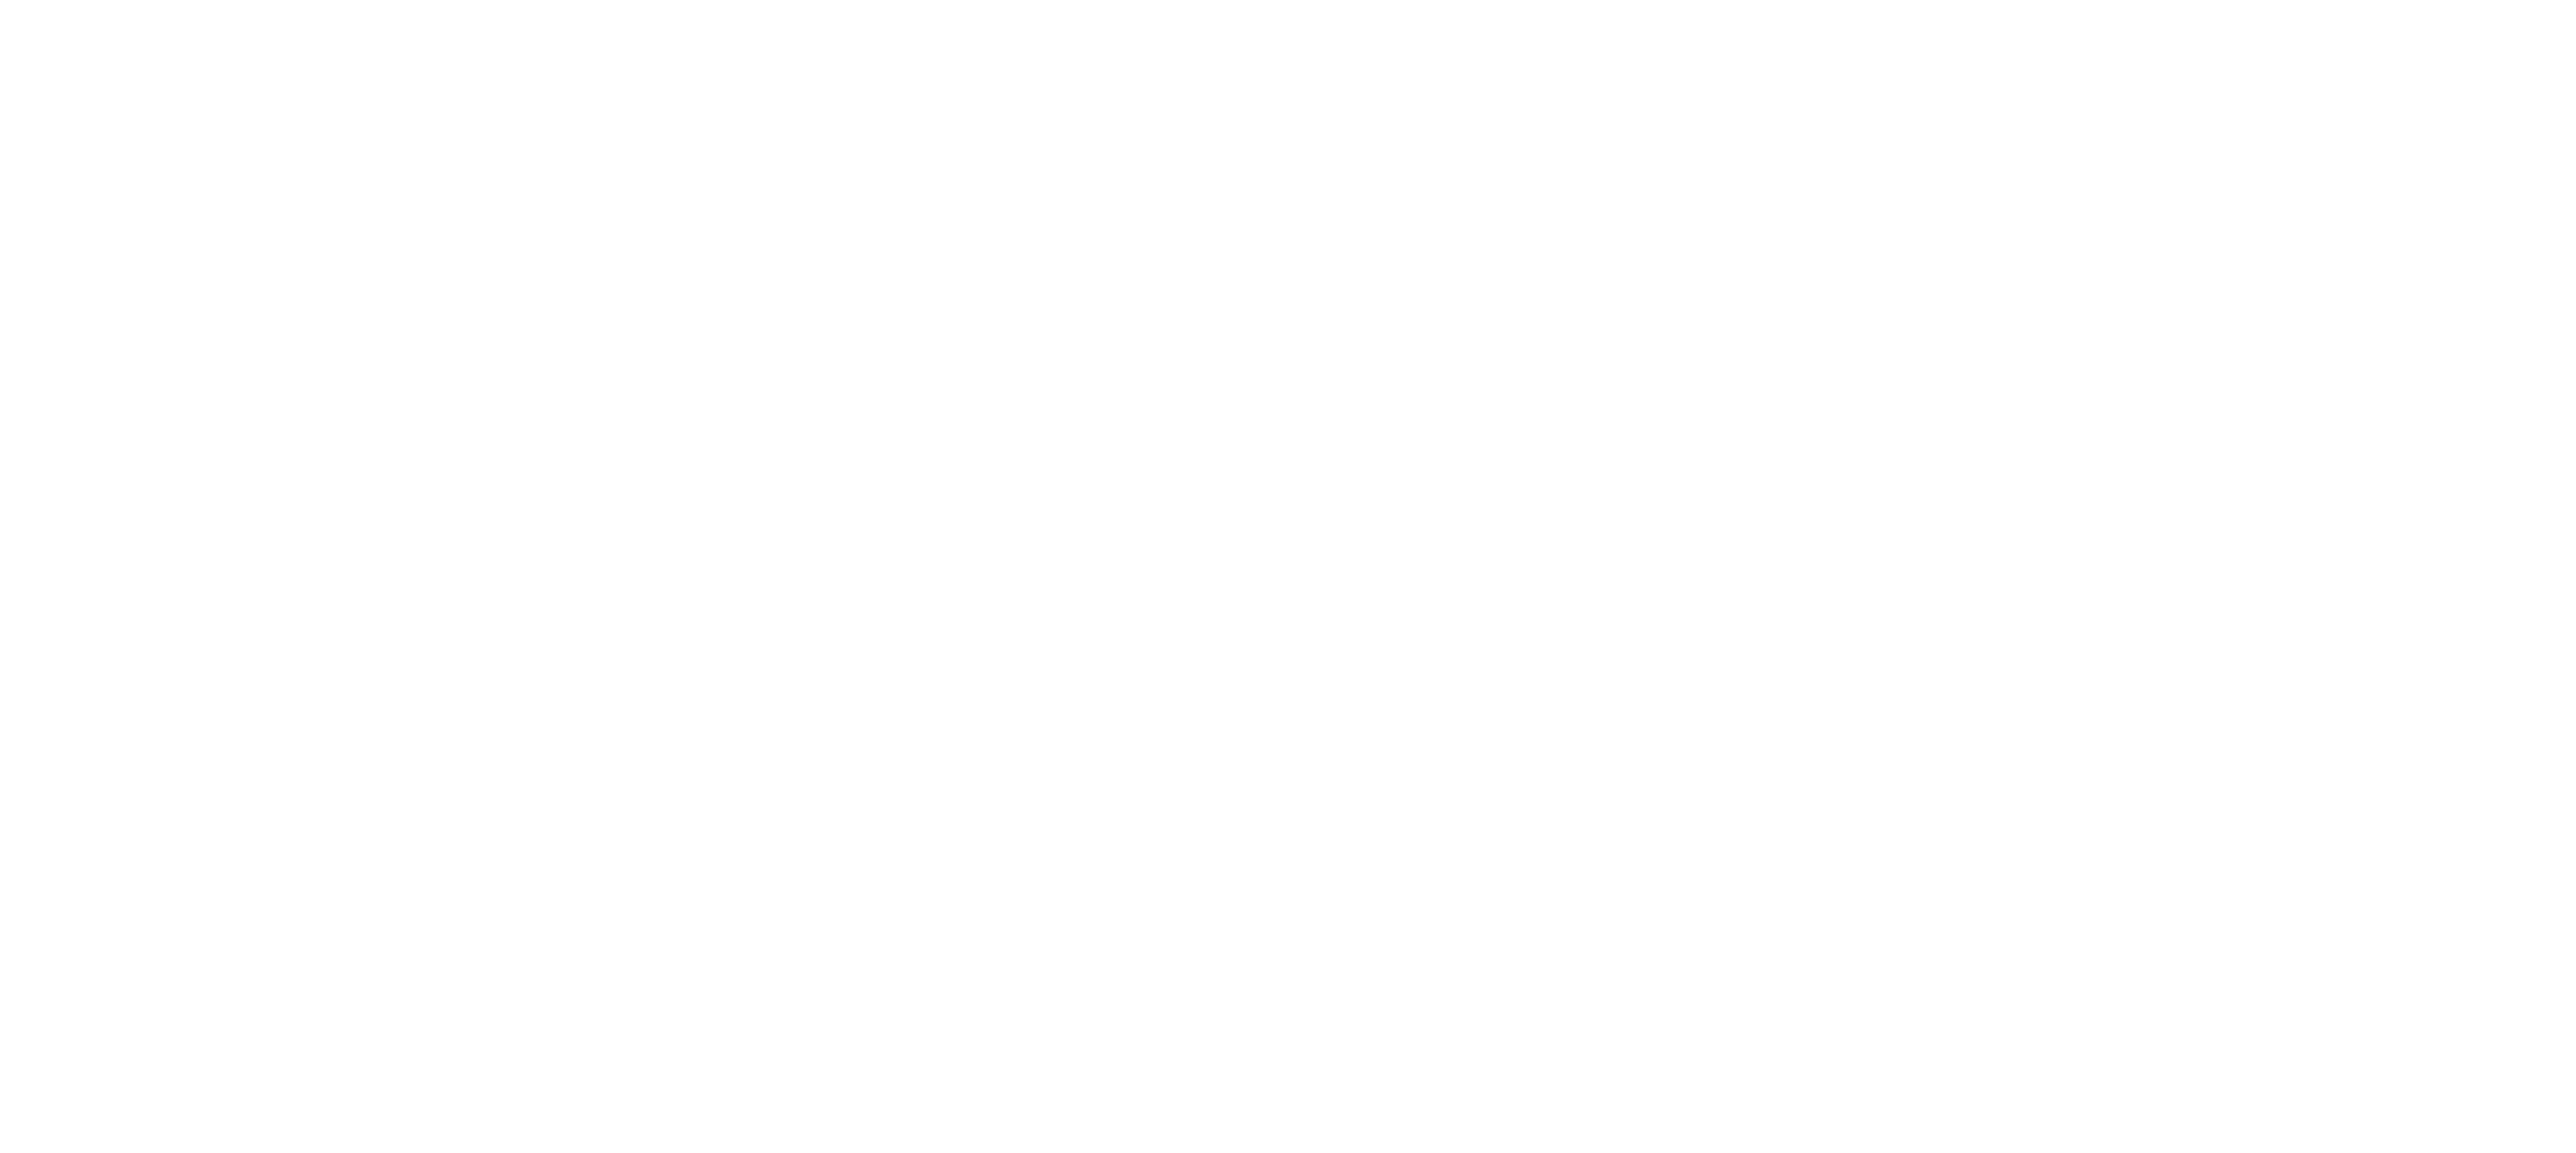 The Hub Lobby